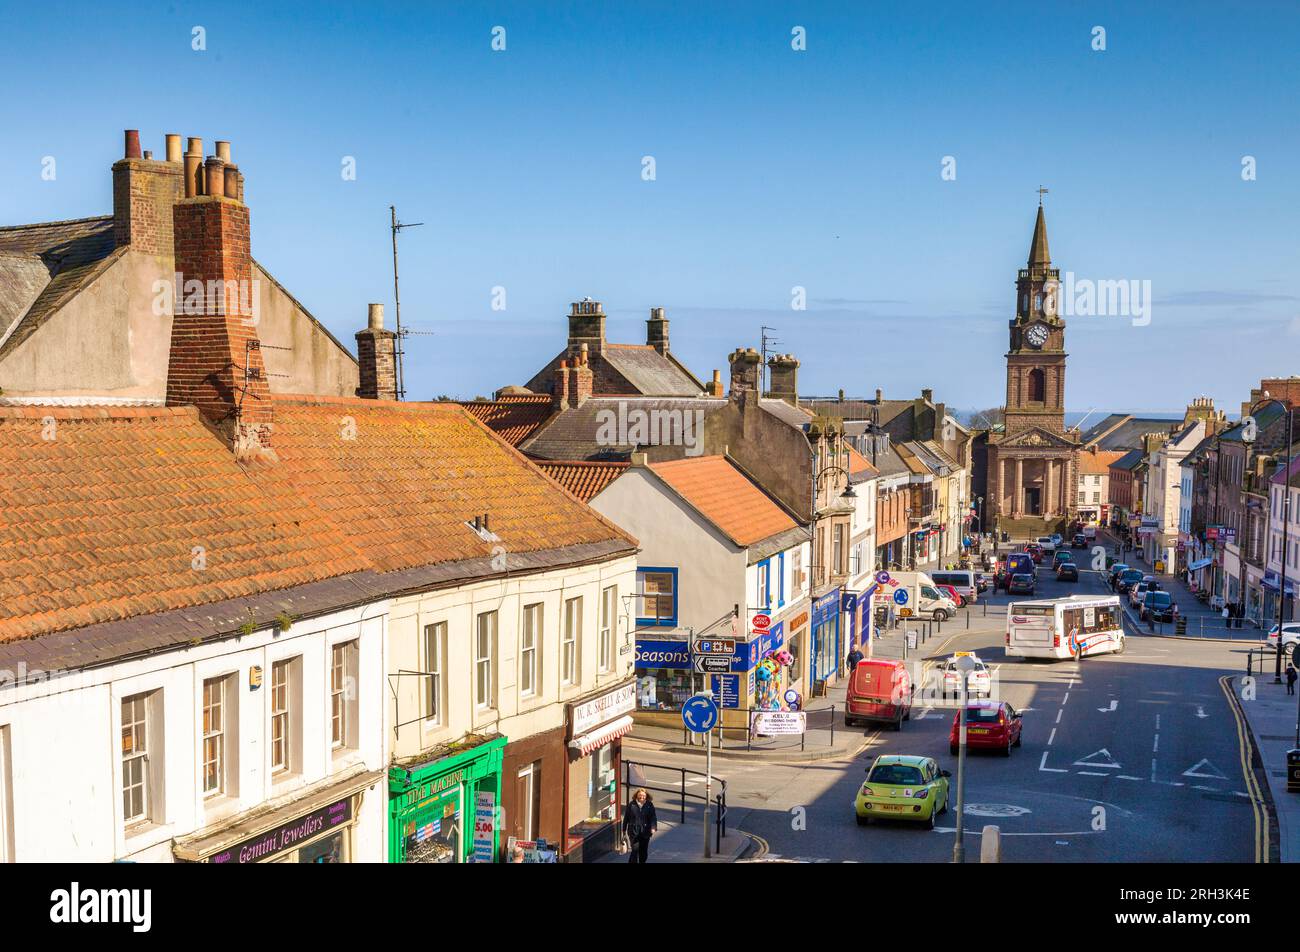 14 avril 2016 : Berwick-on-Tweed, Northumberland, Royaume-Uni - Marygate, occupé par les acheteurs, la circulation et un bus, et l'hôtel de ville avec sa tour de l'horloge historique. Banque D'Images